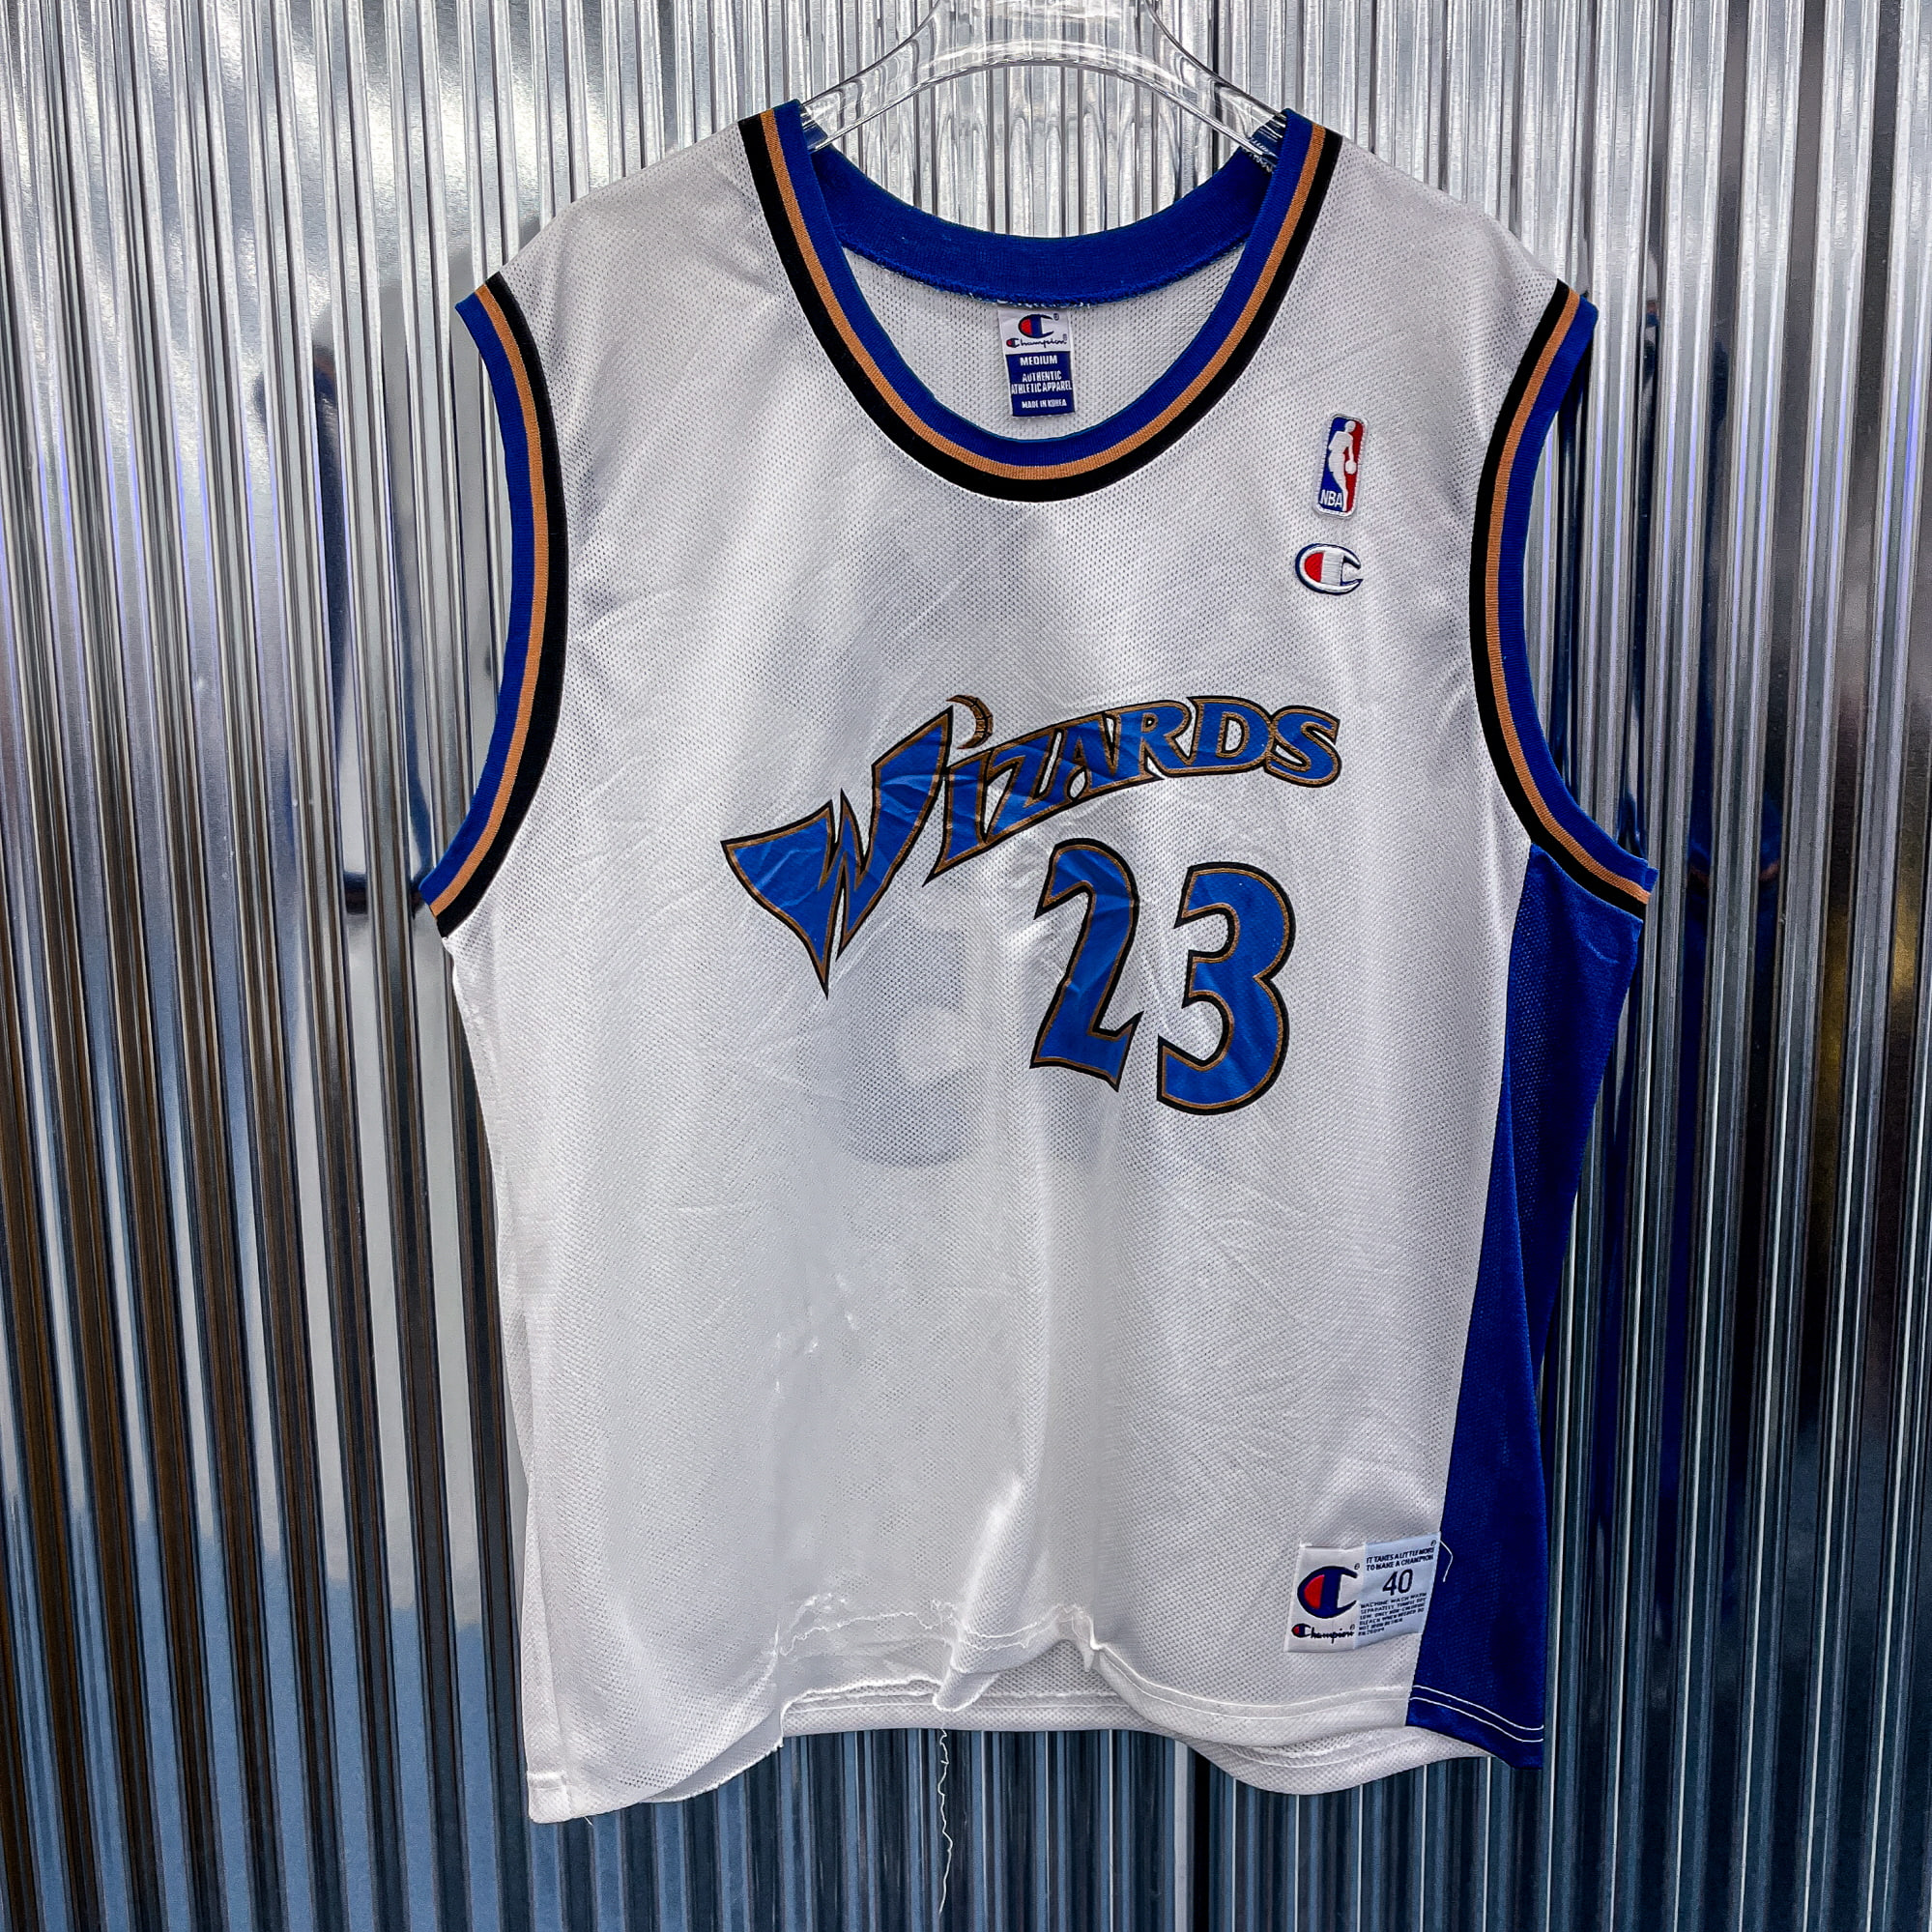 챔피온 NBA 워싱턴 위자드 스윙맨 (국내 XL) AK9